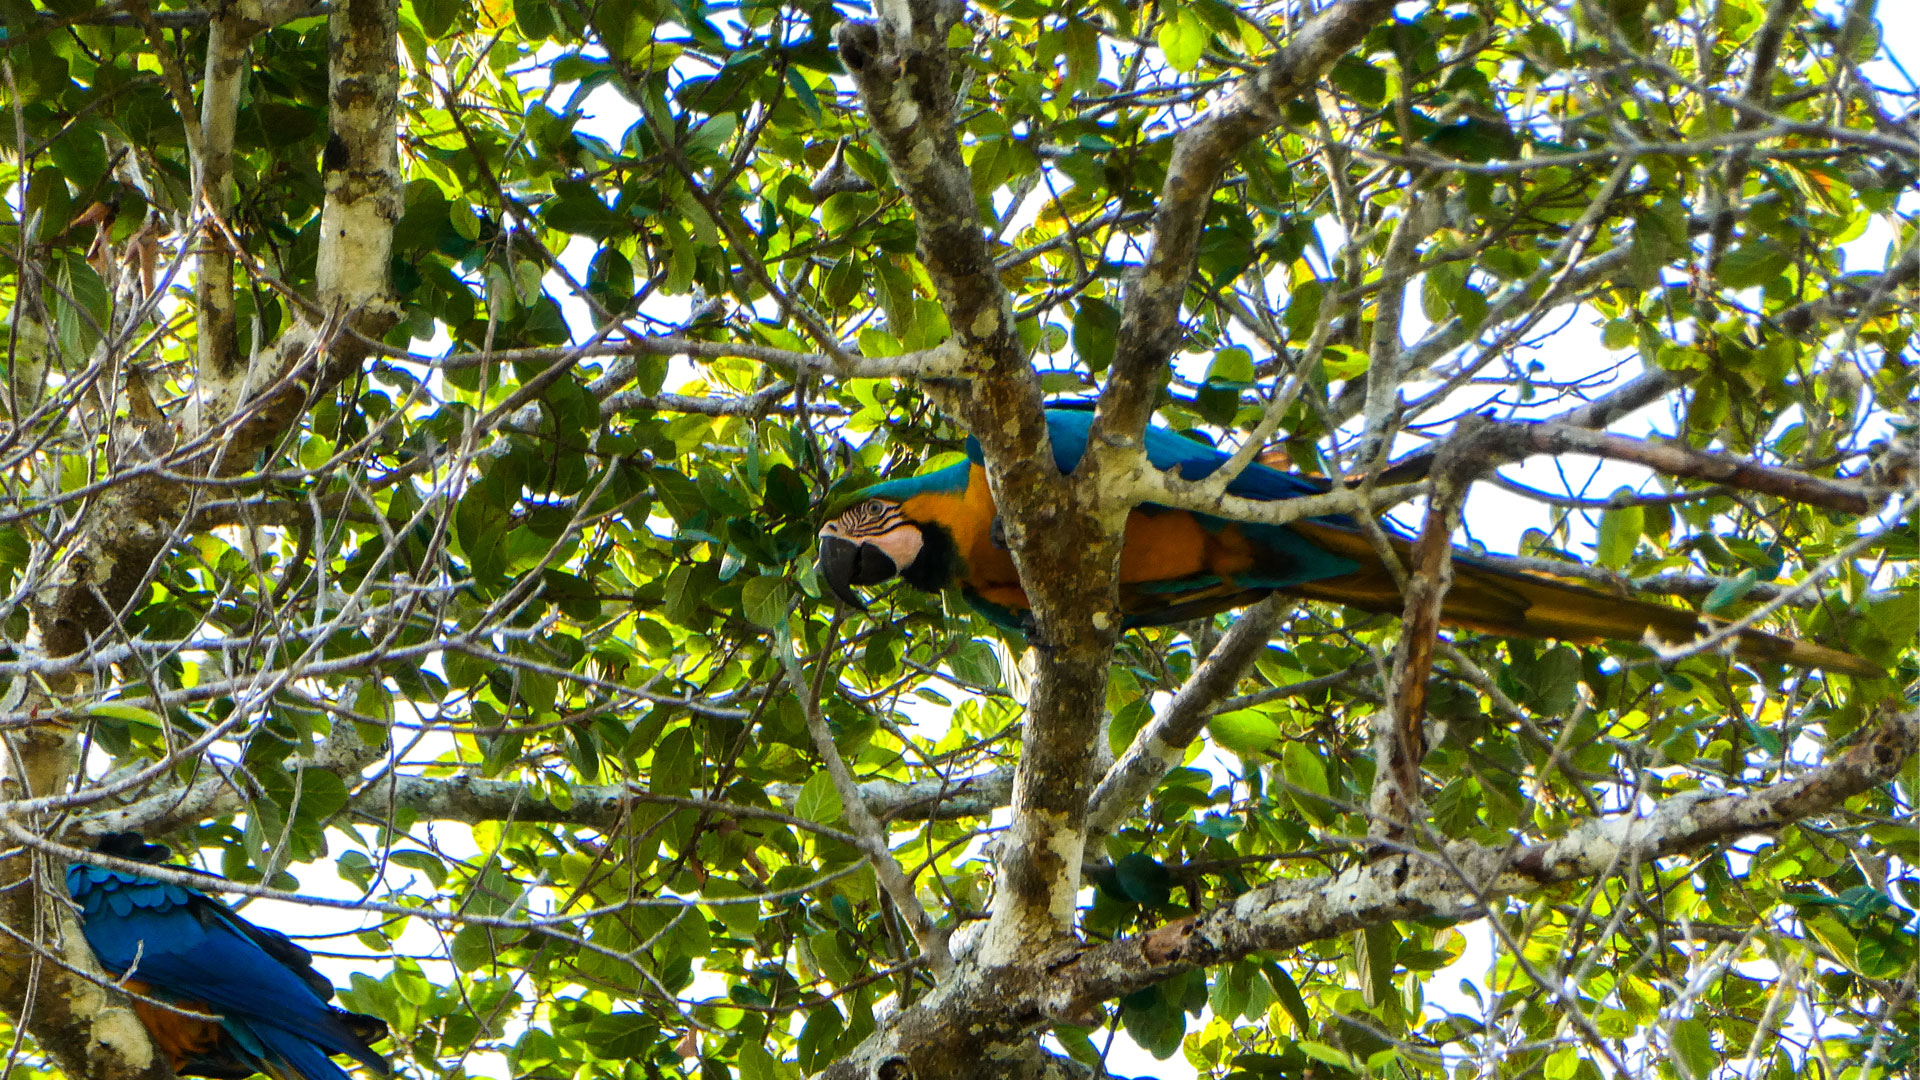 https://cdn.aucklandunlimited.com/zoo/assets/media/macaws-sachin-story-gallery-5.jpg